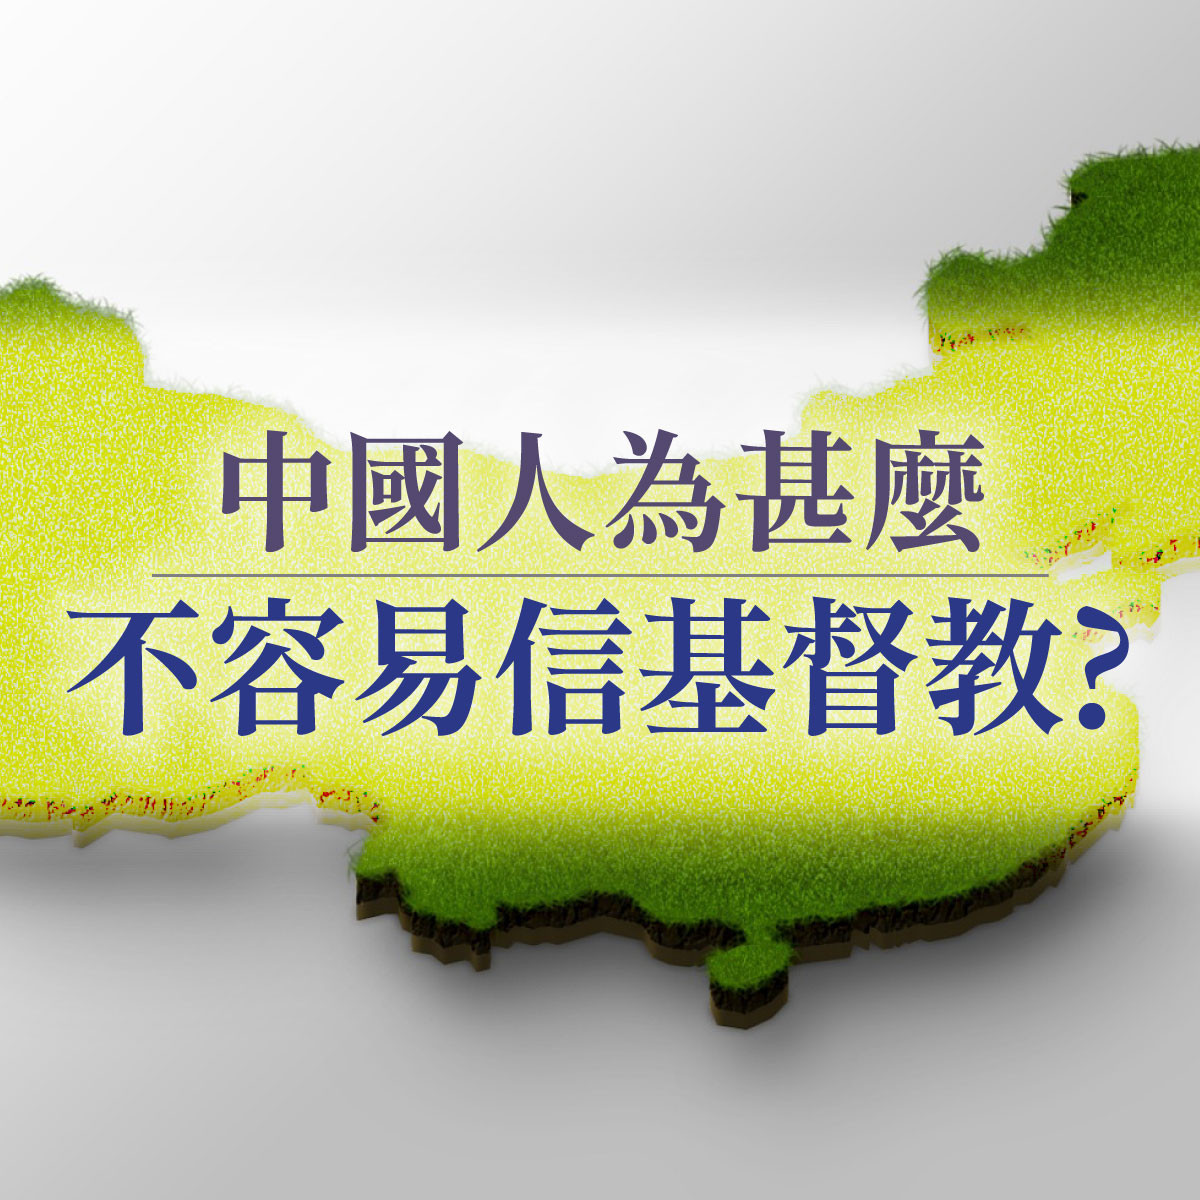 中國人為什麼不容易信基督教 - 第六講 - 願福音遍傳神州封面圖